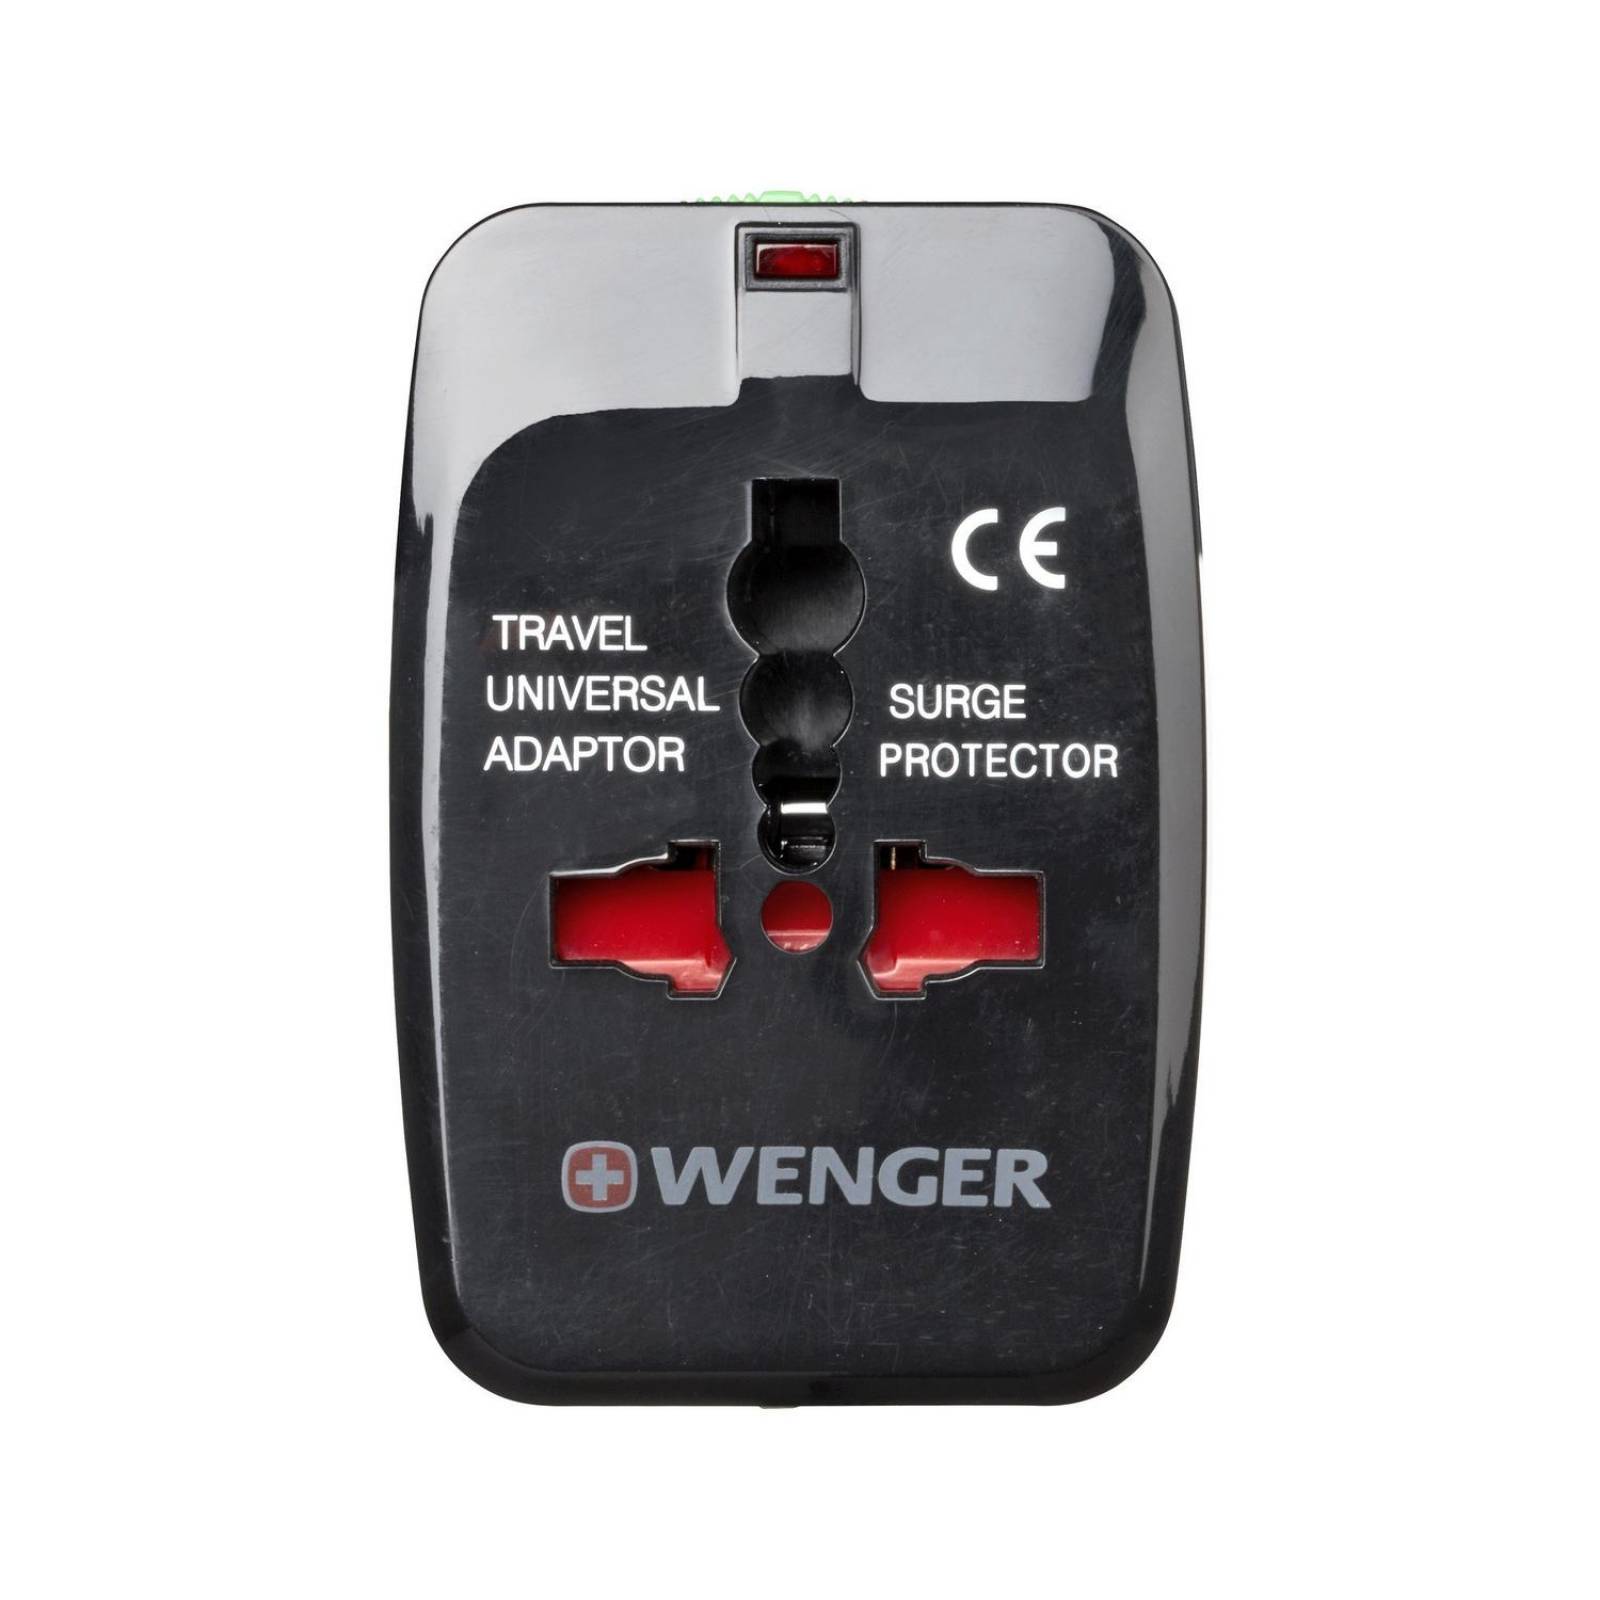 Adaptador de Viaje Universal Wenger, 604551, Color Gris, para viajes globales, tamaño compacto 